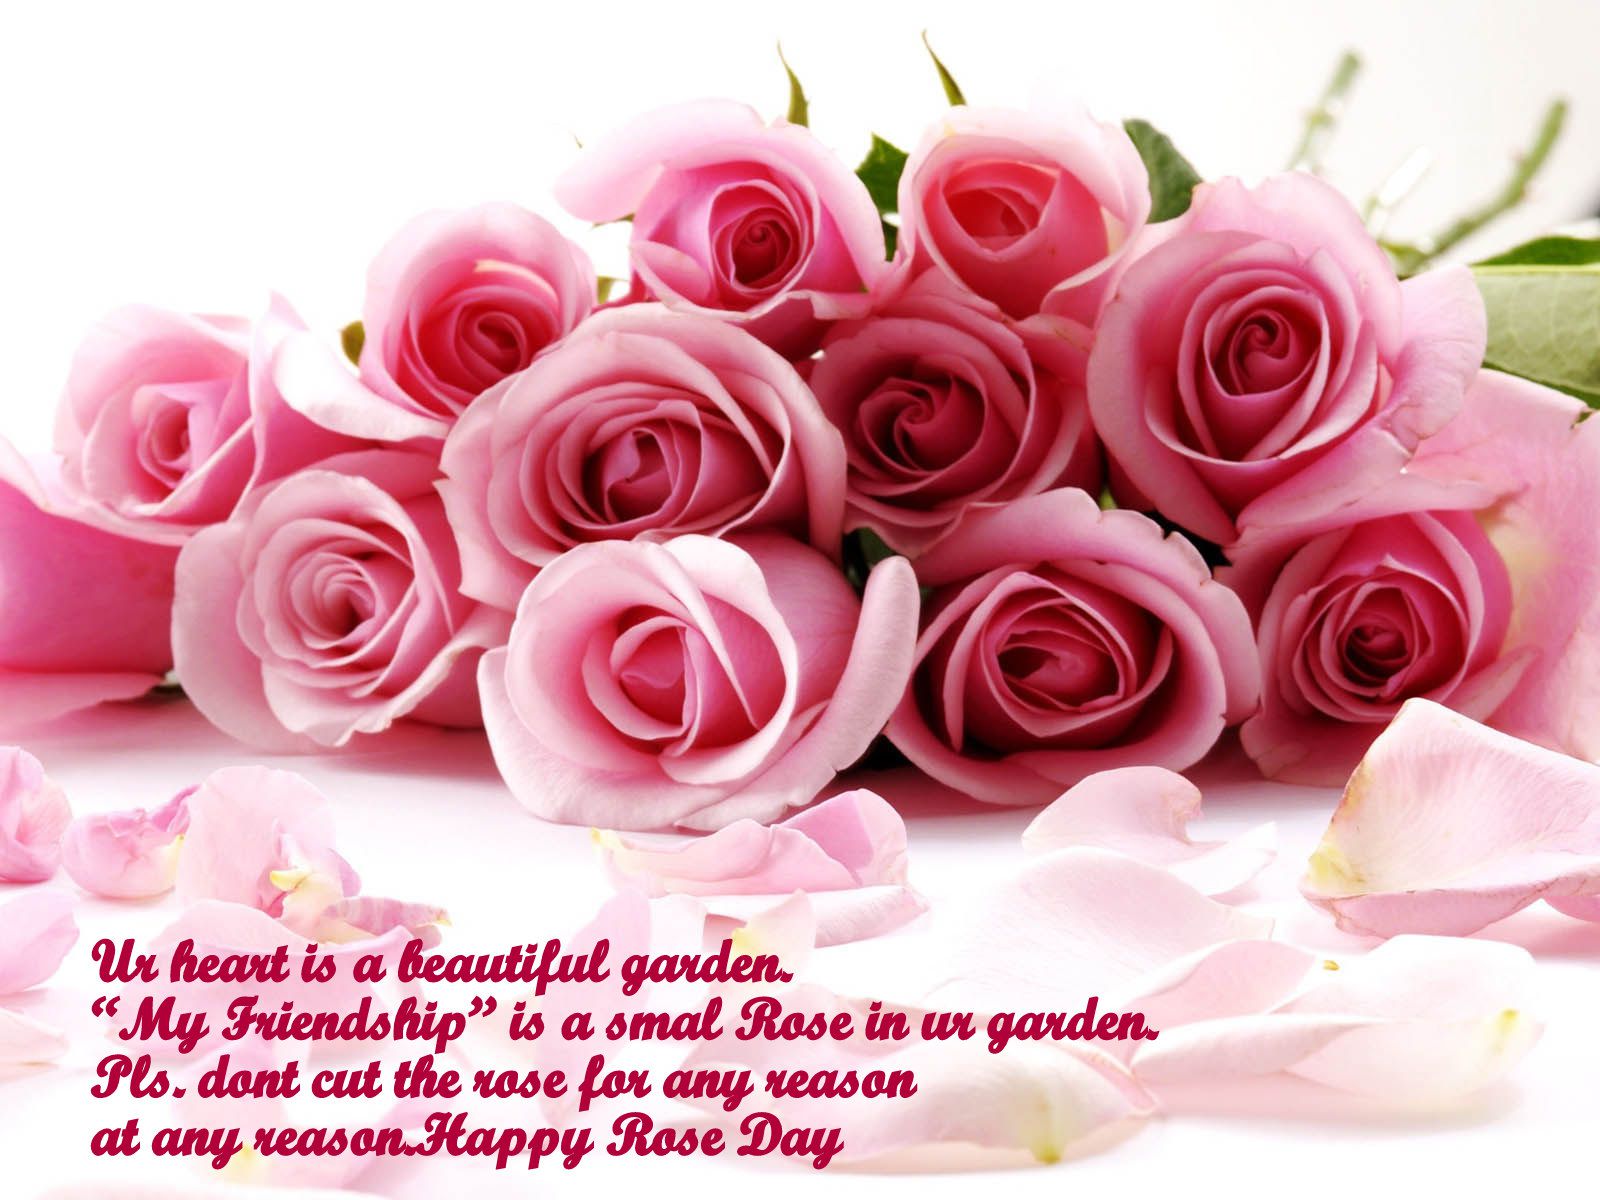 gulab sfondo completo,rose da giardino,rosa,fiore,rosa,tagliare i fiori